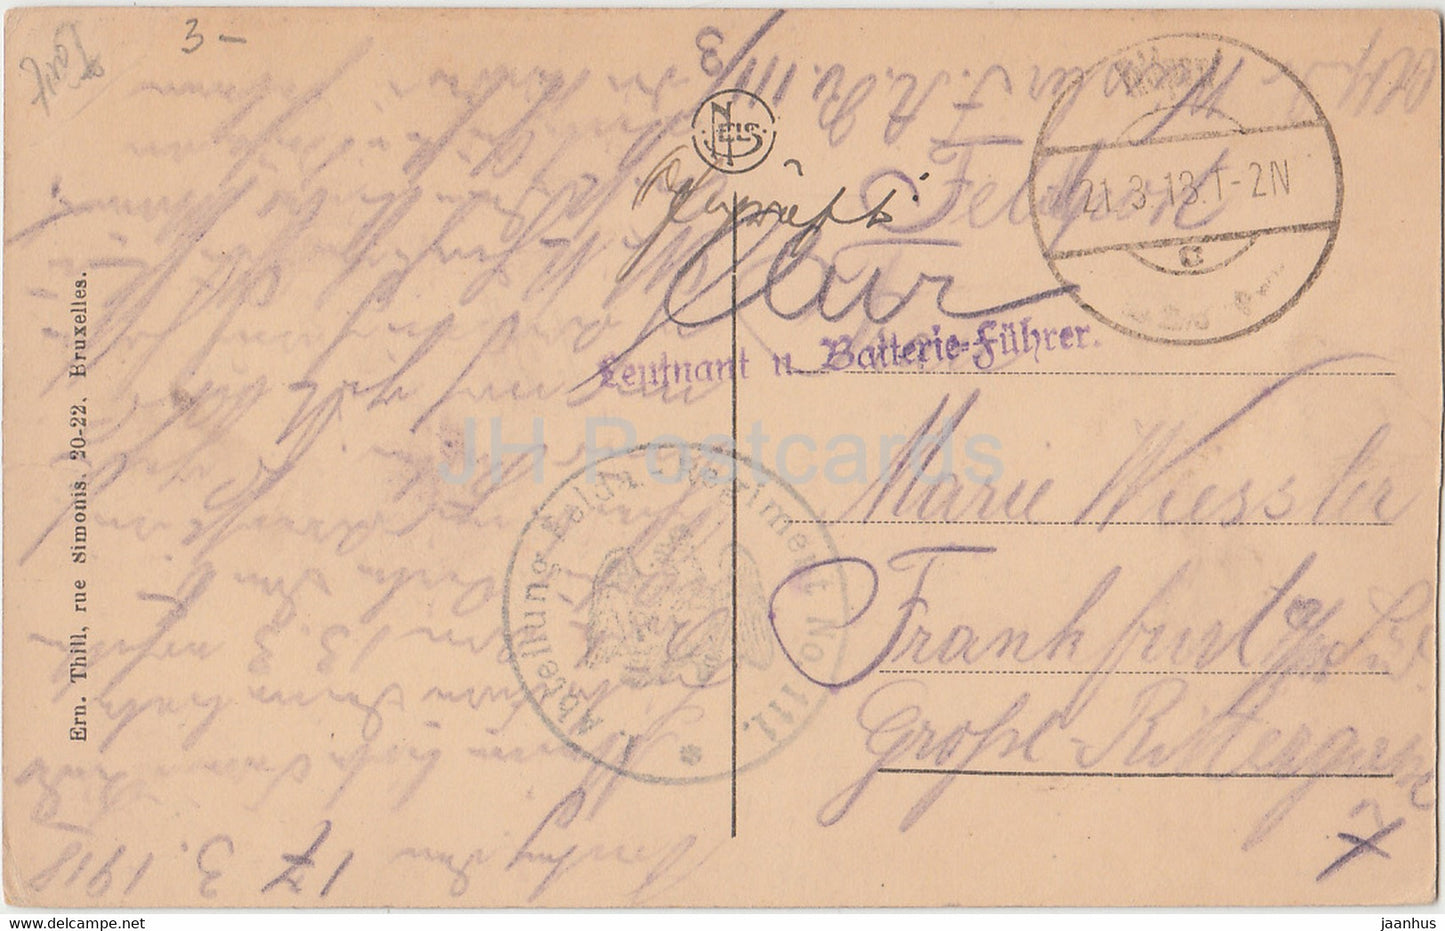 Vallee de la Semois - Mouzaive et Alle - Abteilung Felda Regiment 111 - Feldpost - alte Postkarte - 1918 - Belgien - gebraucht